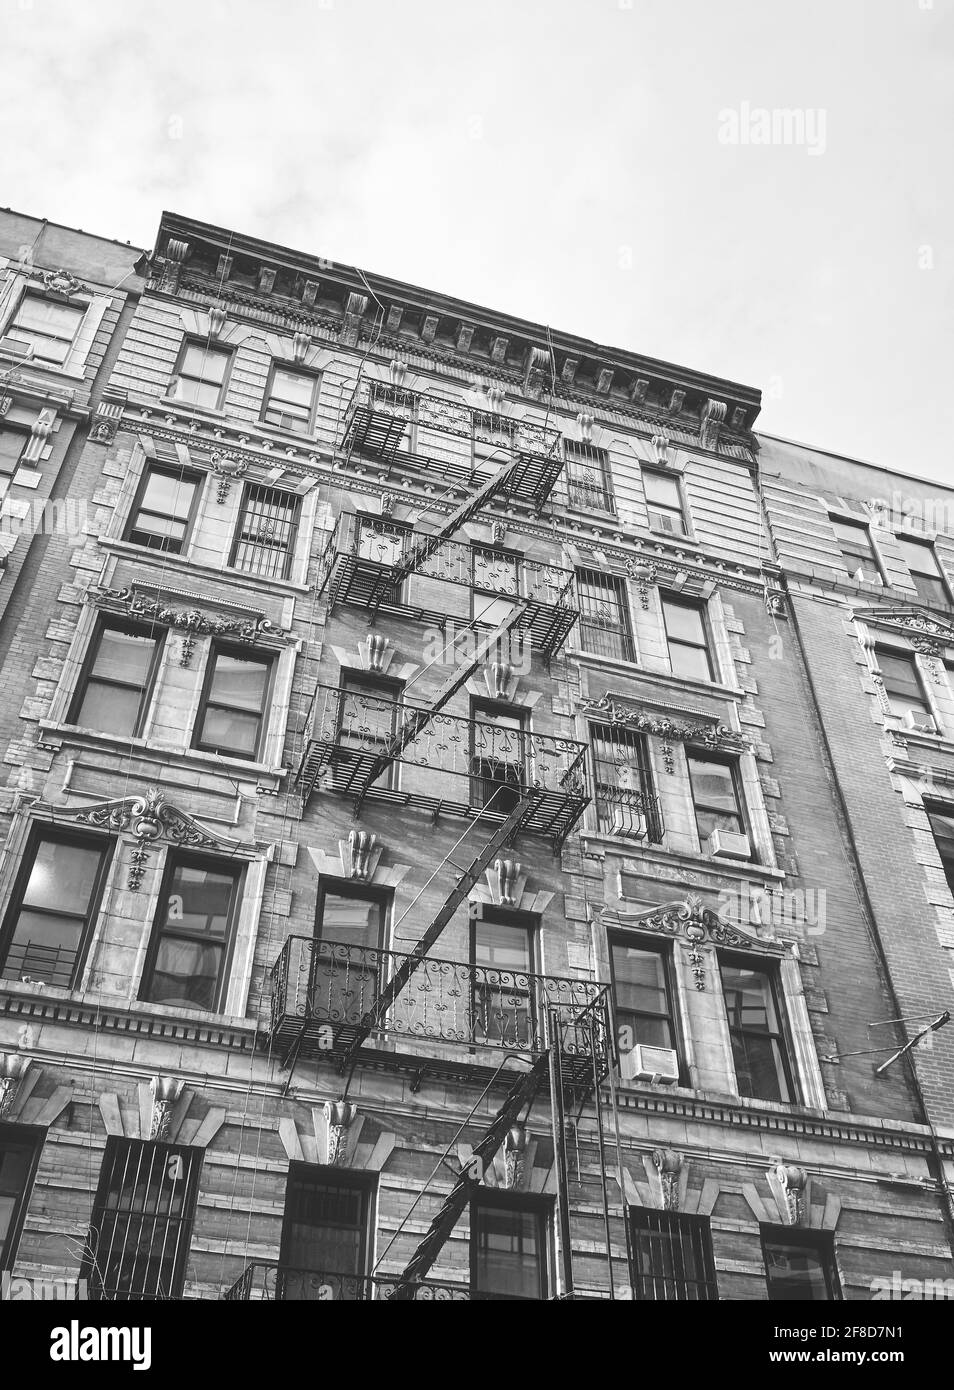 Immagine in bianco e nero di un vecchio edificio con scappamento da fuoco di ferro, New York City, USA. Foto Stock